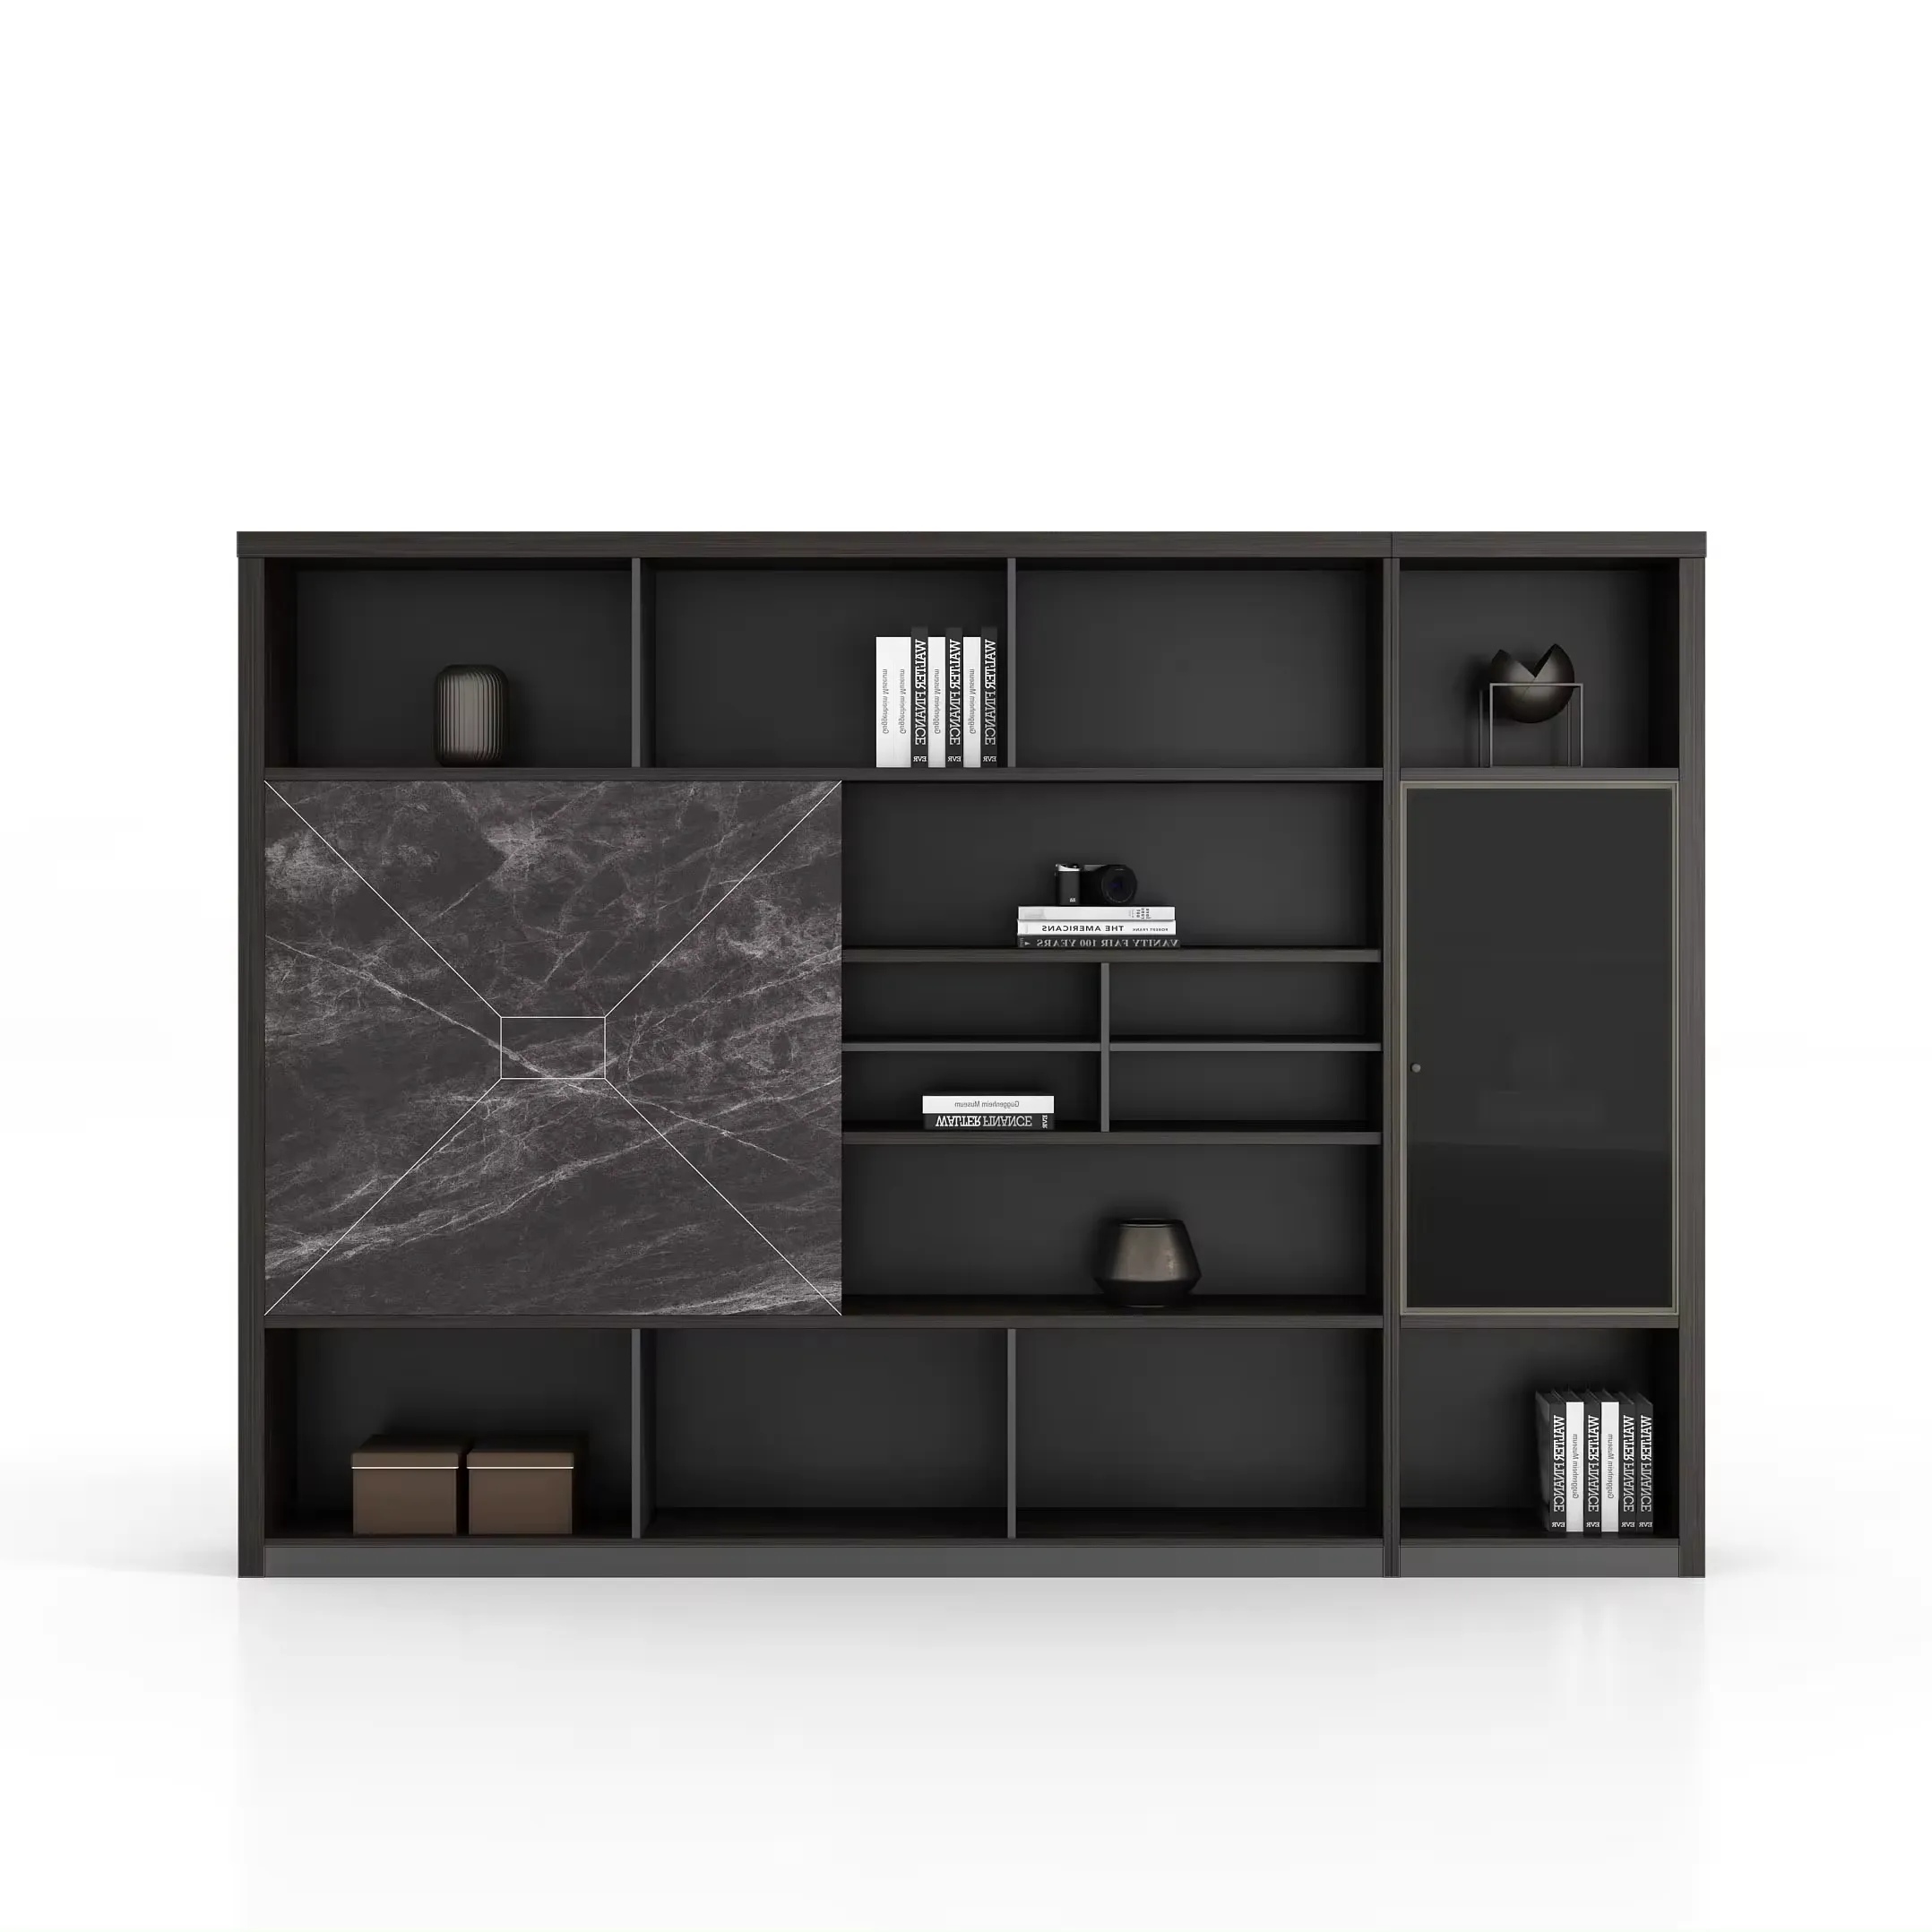 Современный дизайн швейцарский орех, роскошный шкаф для хранения документов со стеклянной дверью, деревянный офисный шкаф